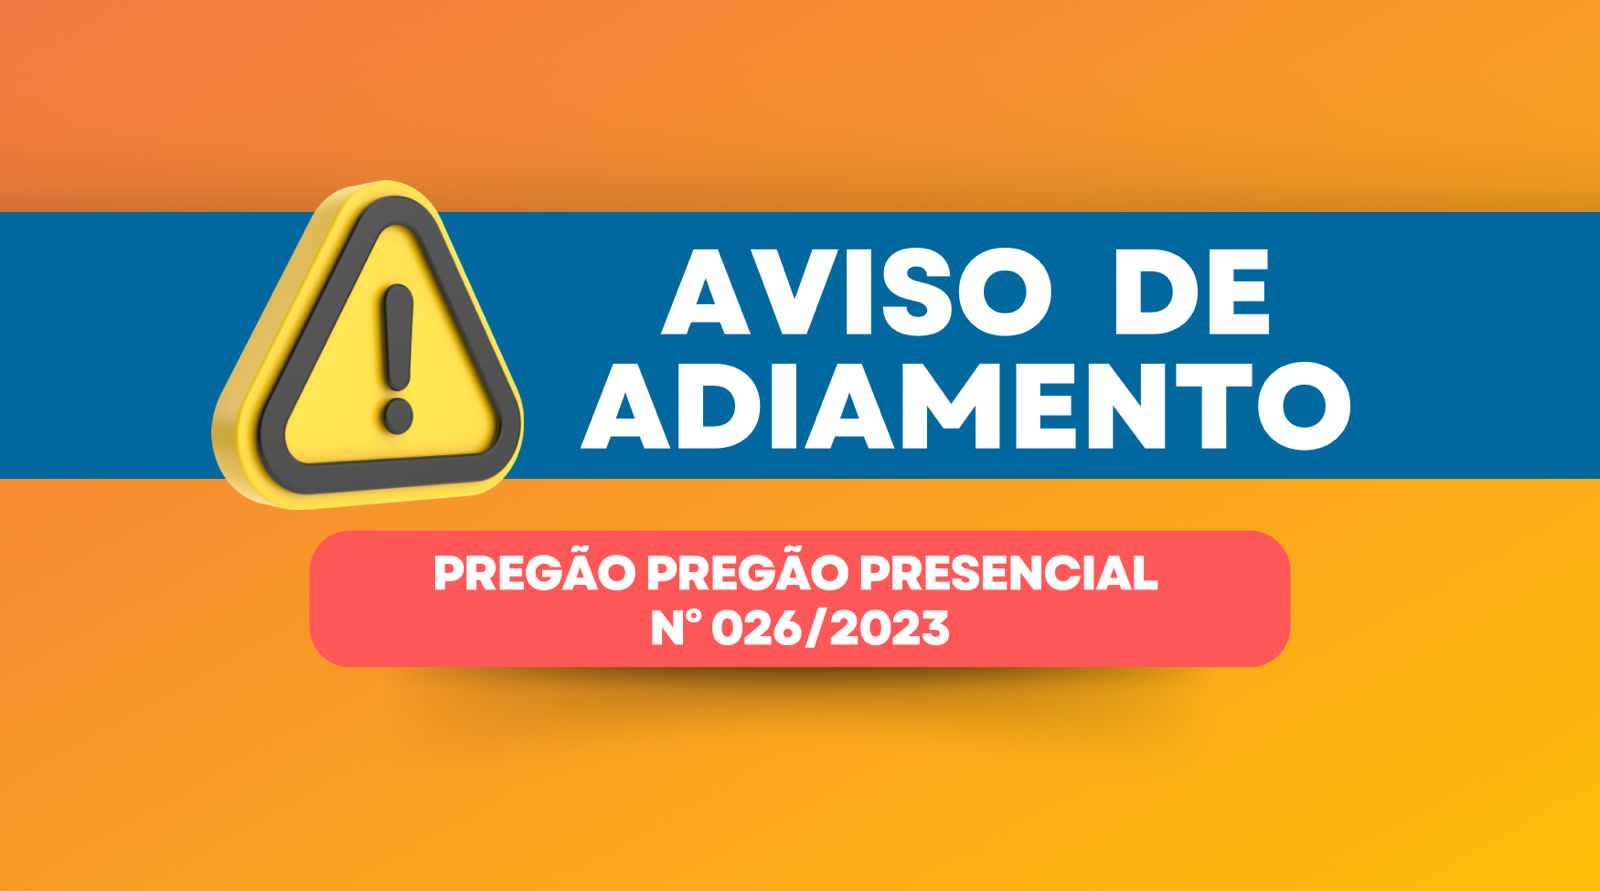 AVISO DE ADIAMENTO DE LICITAÇÃO PREGÃO PRESENCIAL Nº. 026/2023